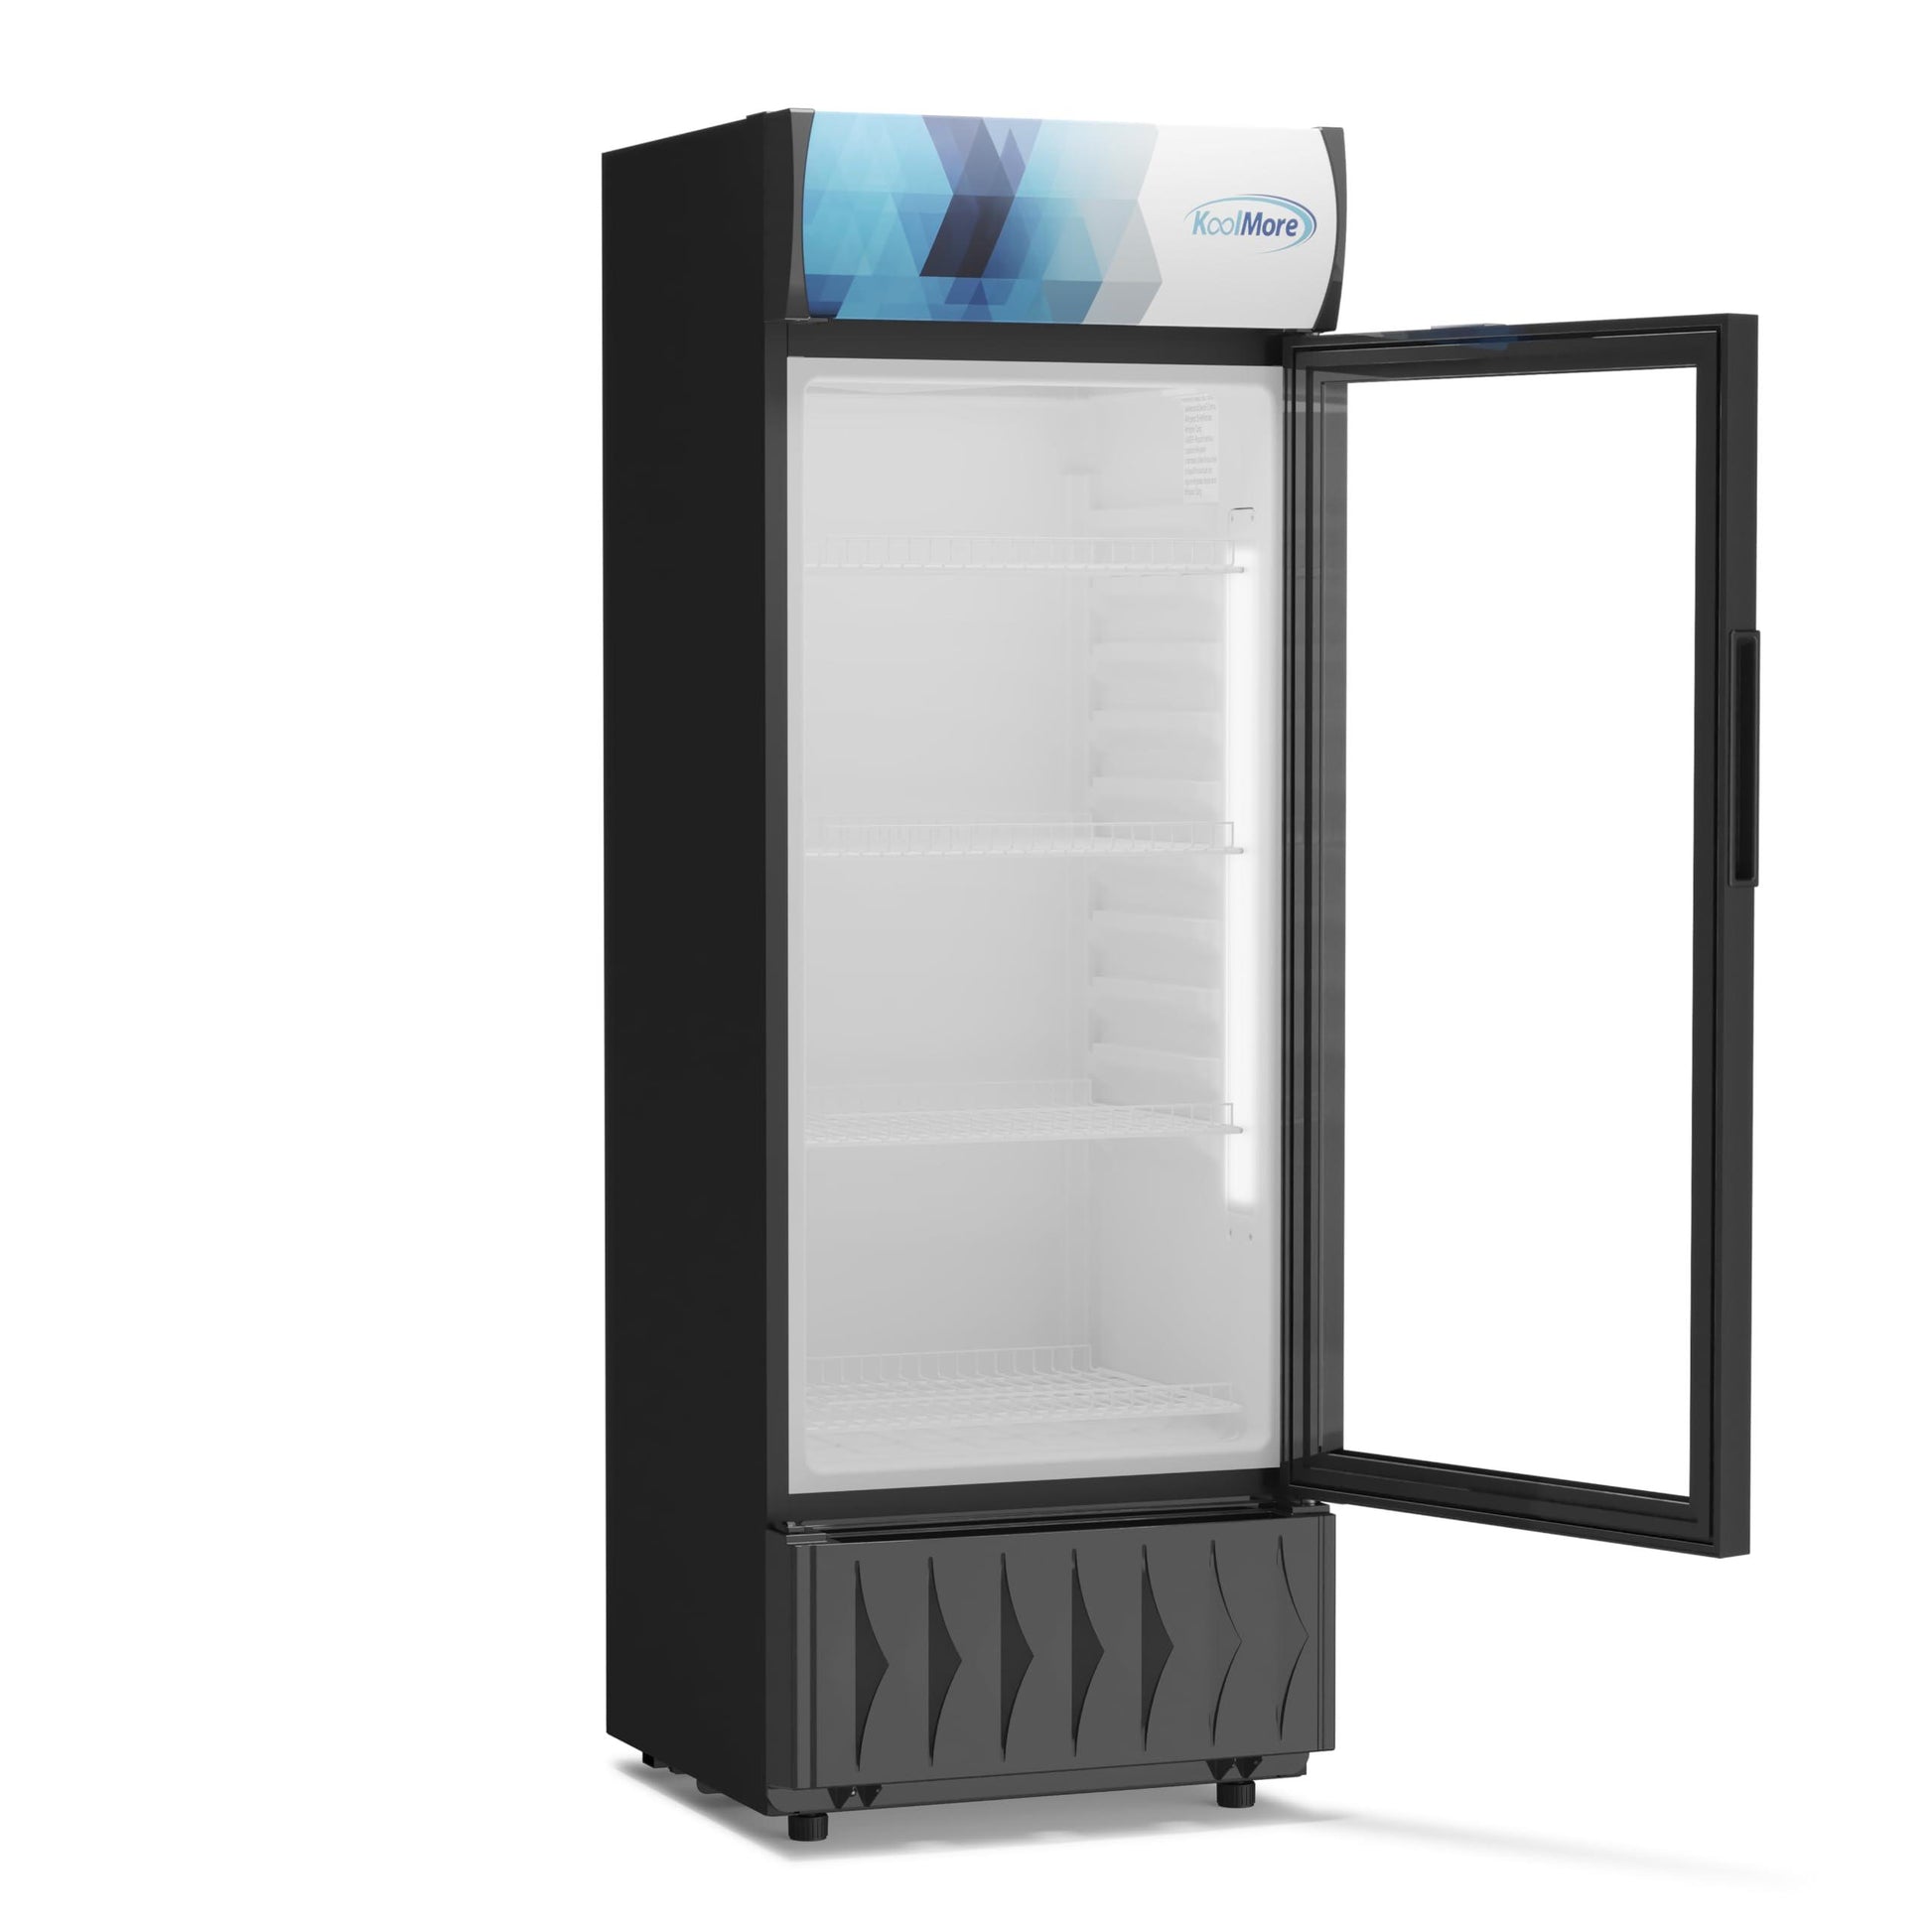 KoolMore MDR-9CP Display-Refrigerator, 9 cu.ft. Single Swing Door, Black - CookCave